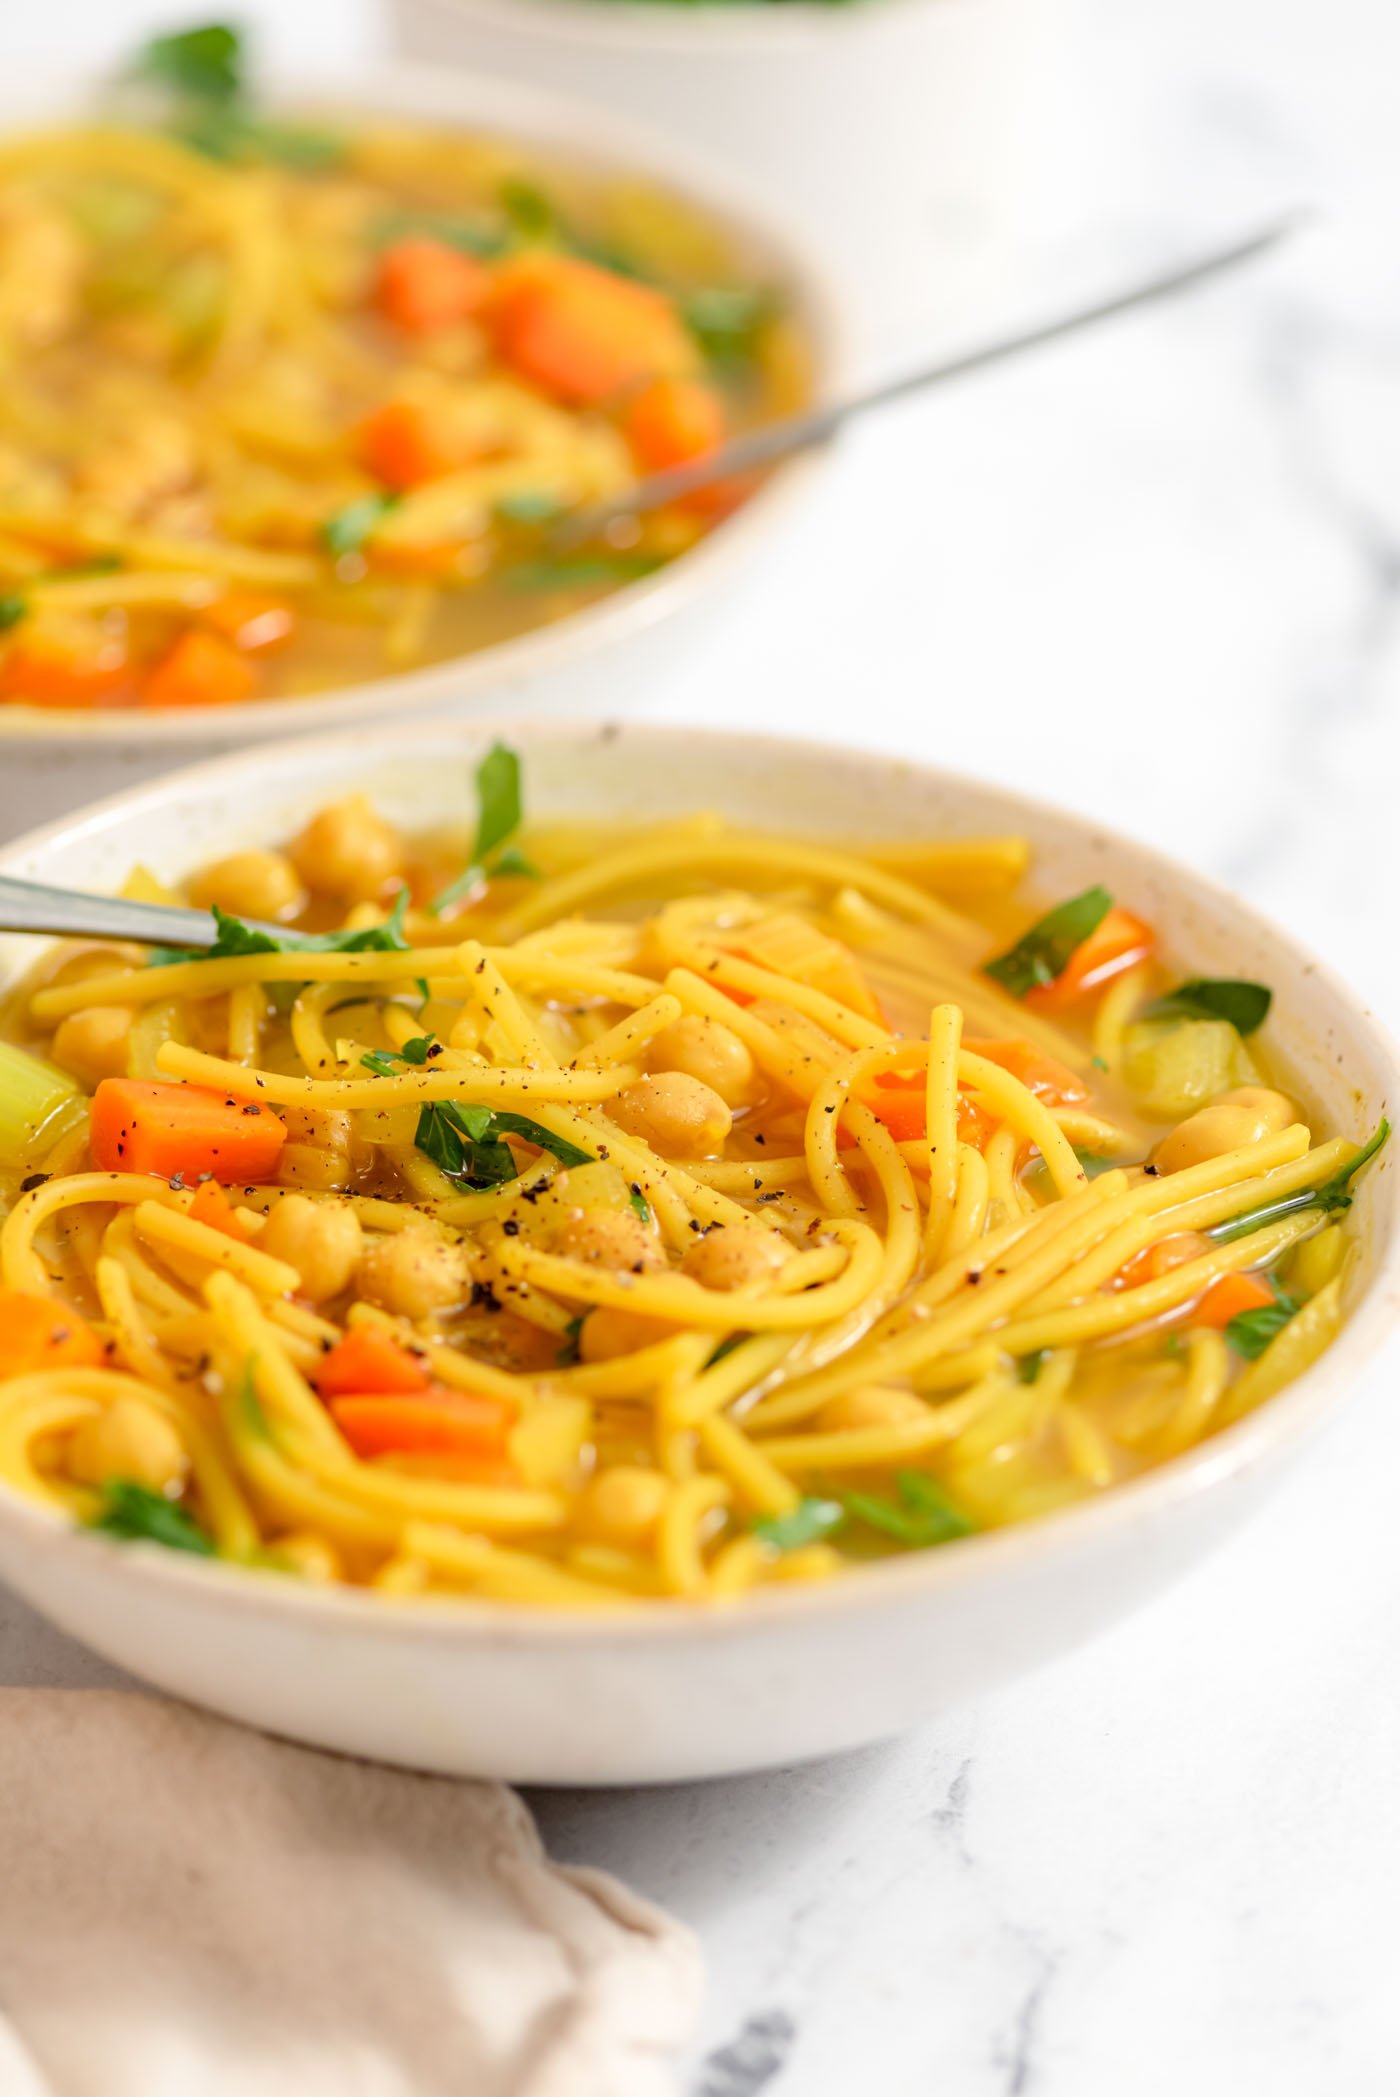 https://runningonrealfood.com/wp-content/uploads/2022/01/Healthy-Vegan-Chickpea-Noodle-Soup-Recipe-6.jpg